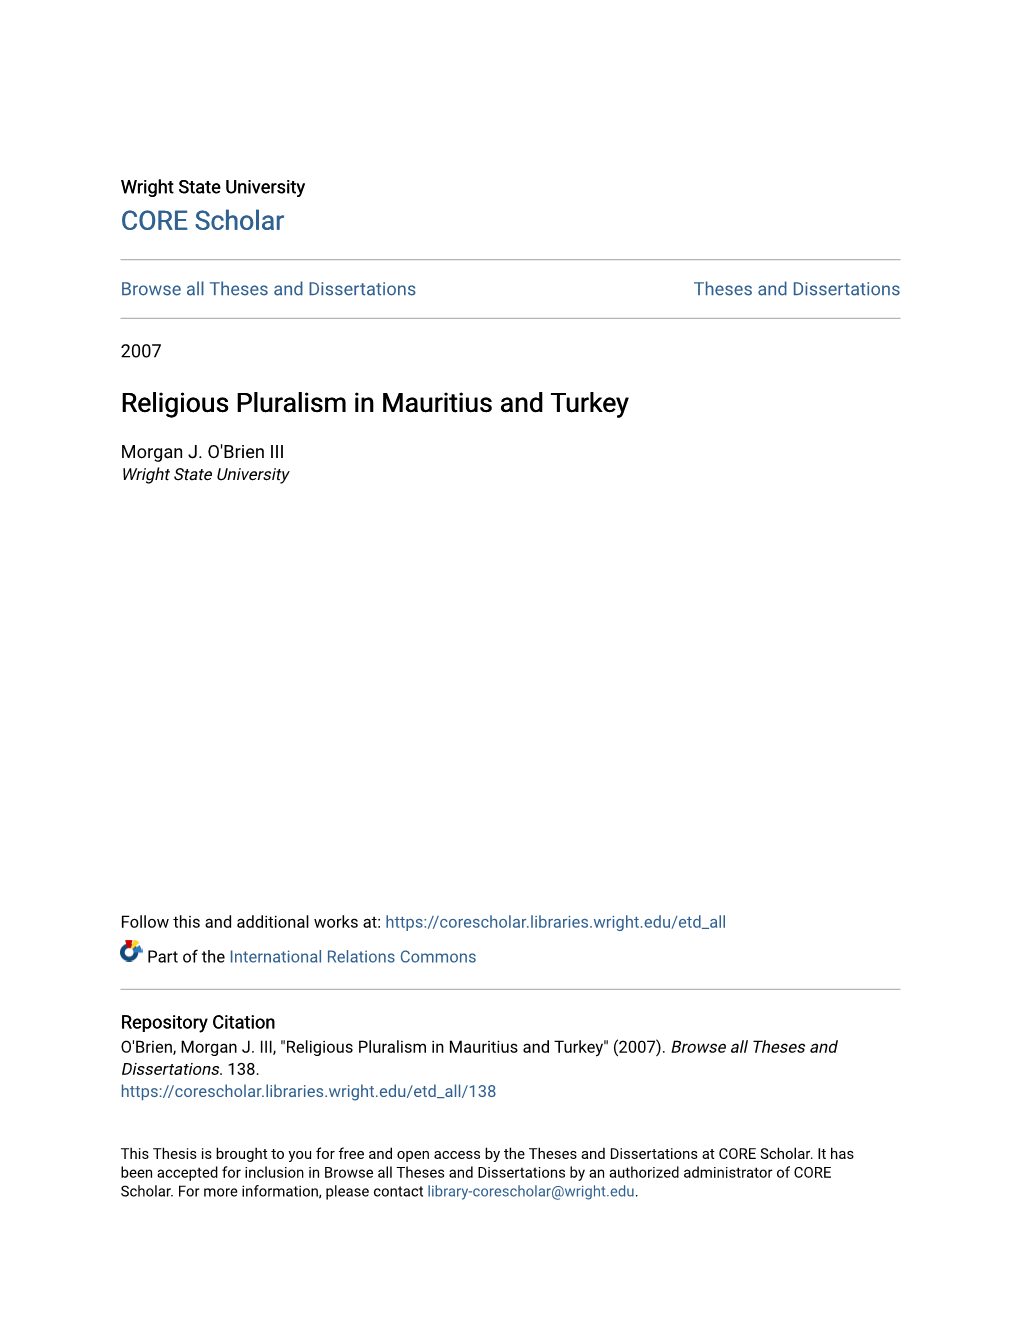 Religious Pluralism in Mauritius and Turkey